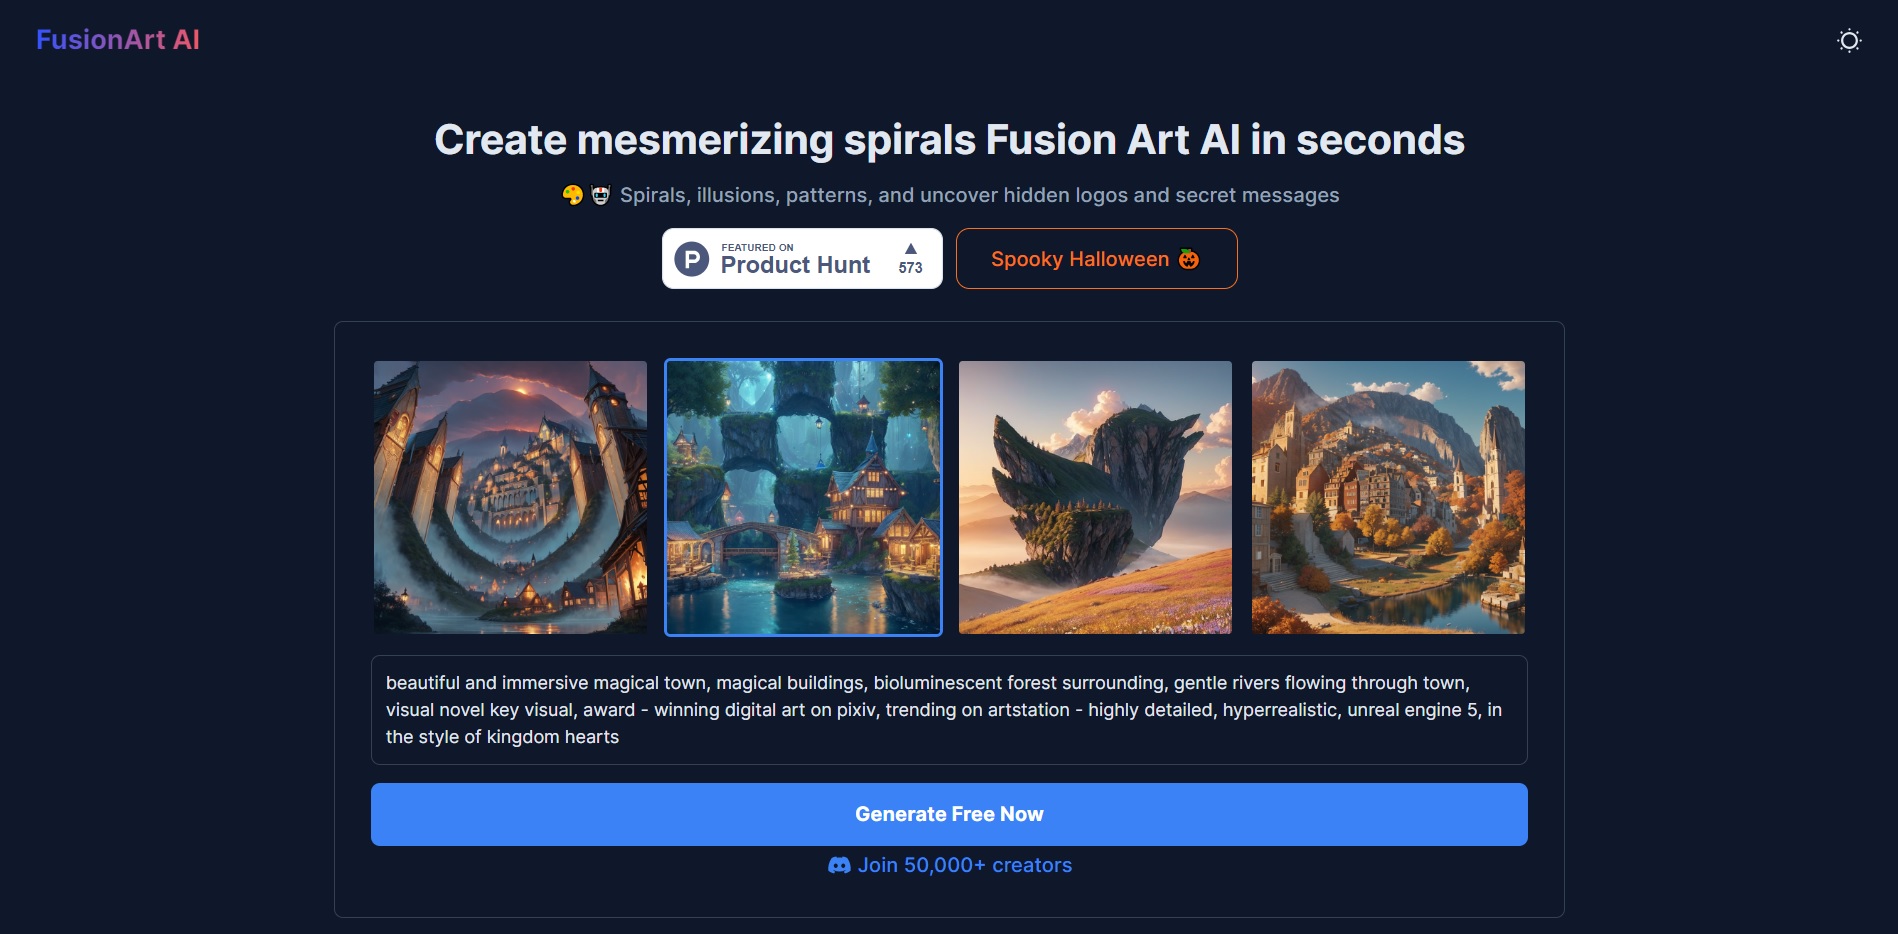 FusionArt AI